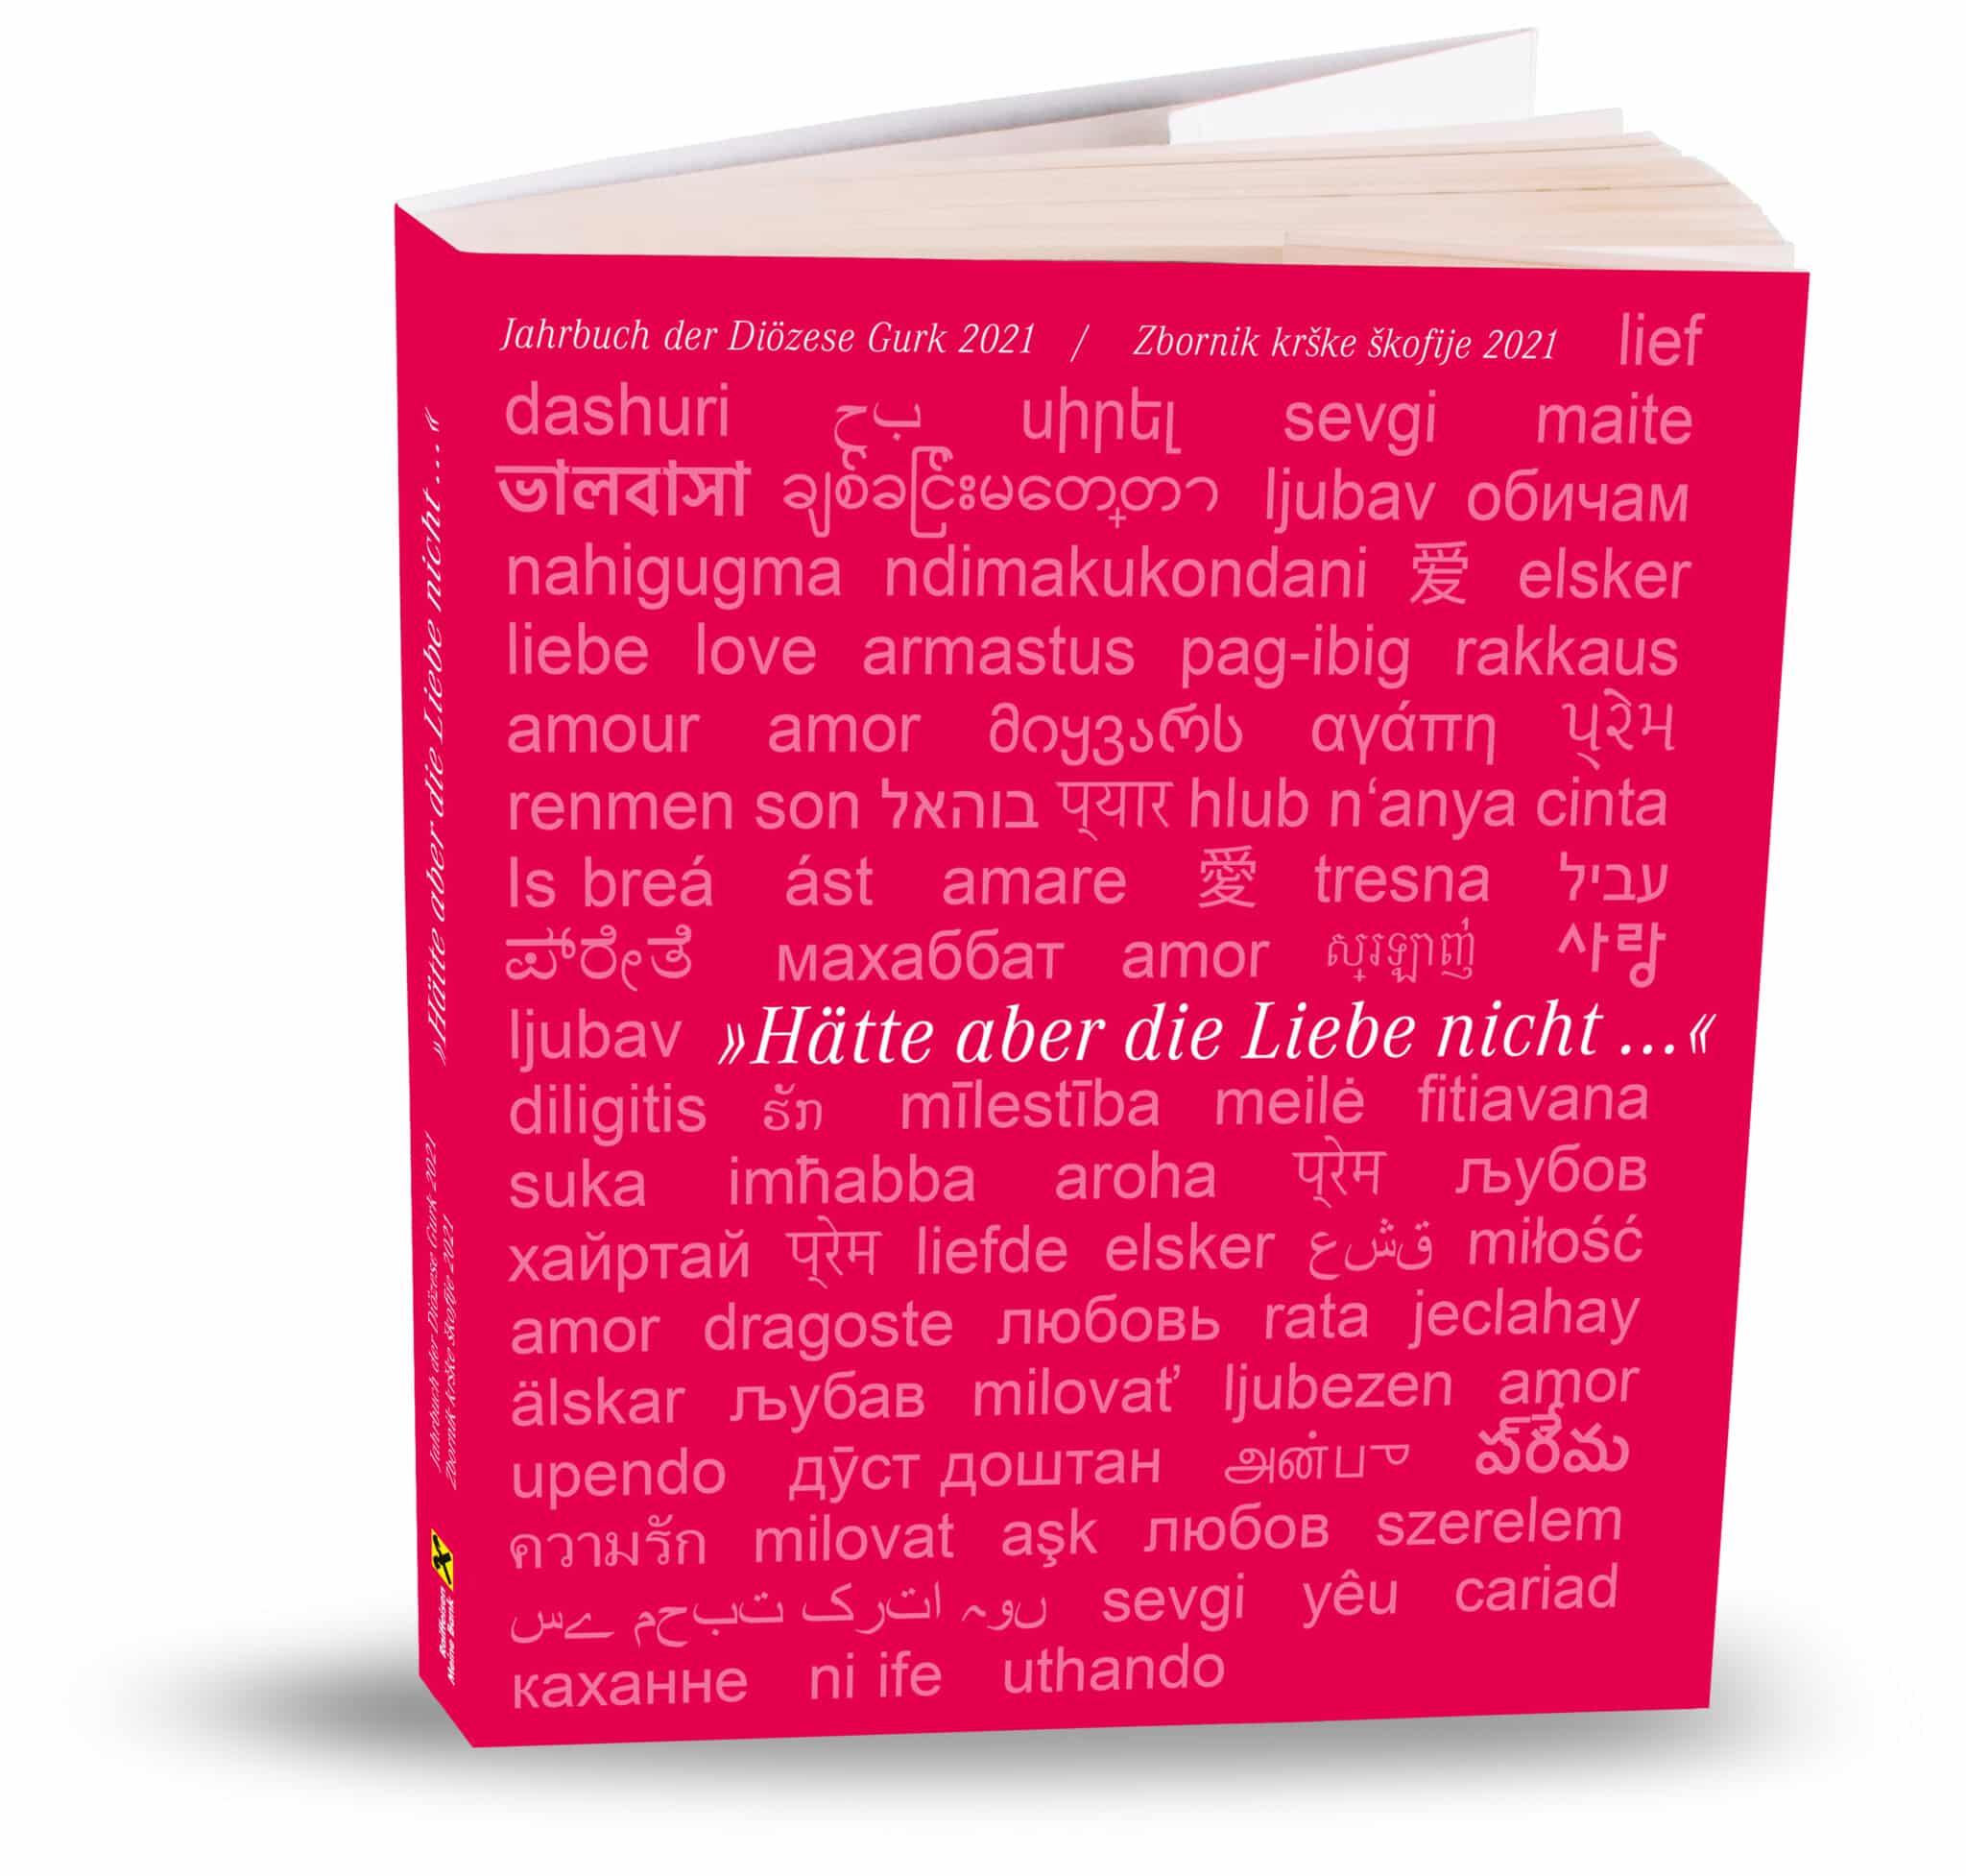 Das Wort “Liebe” schmückt das Cover des neuen Jahrbuches in 86 Sprachen.